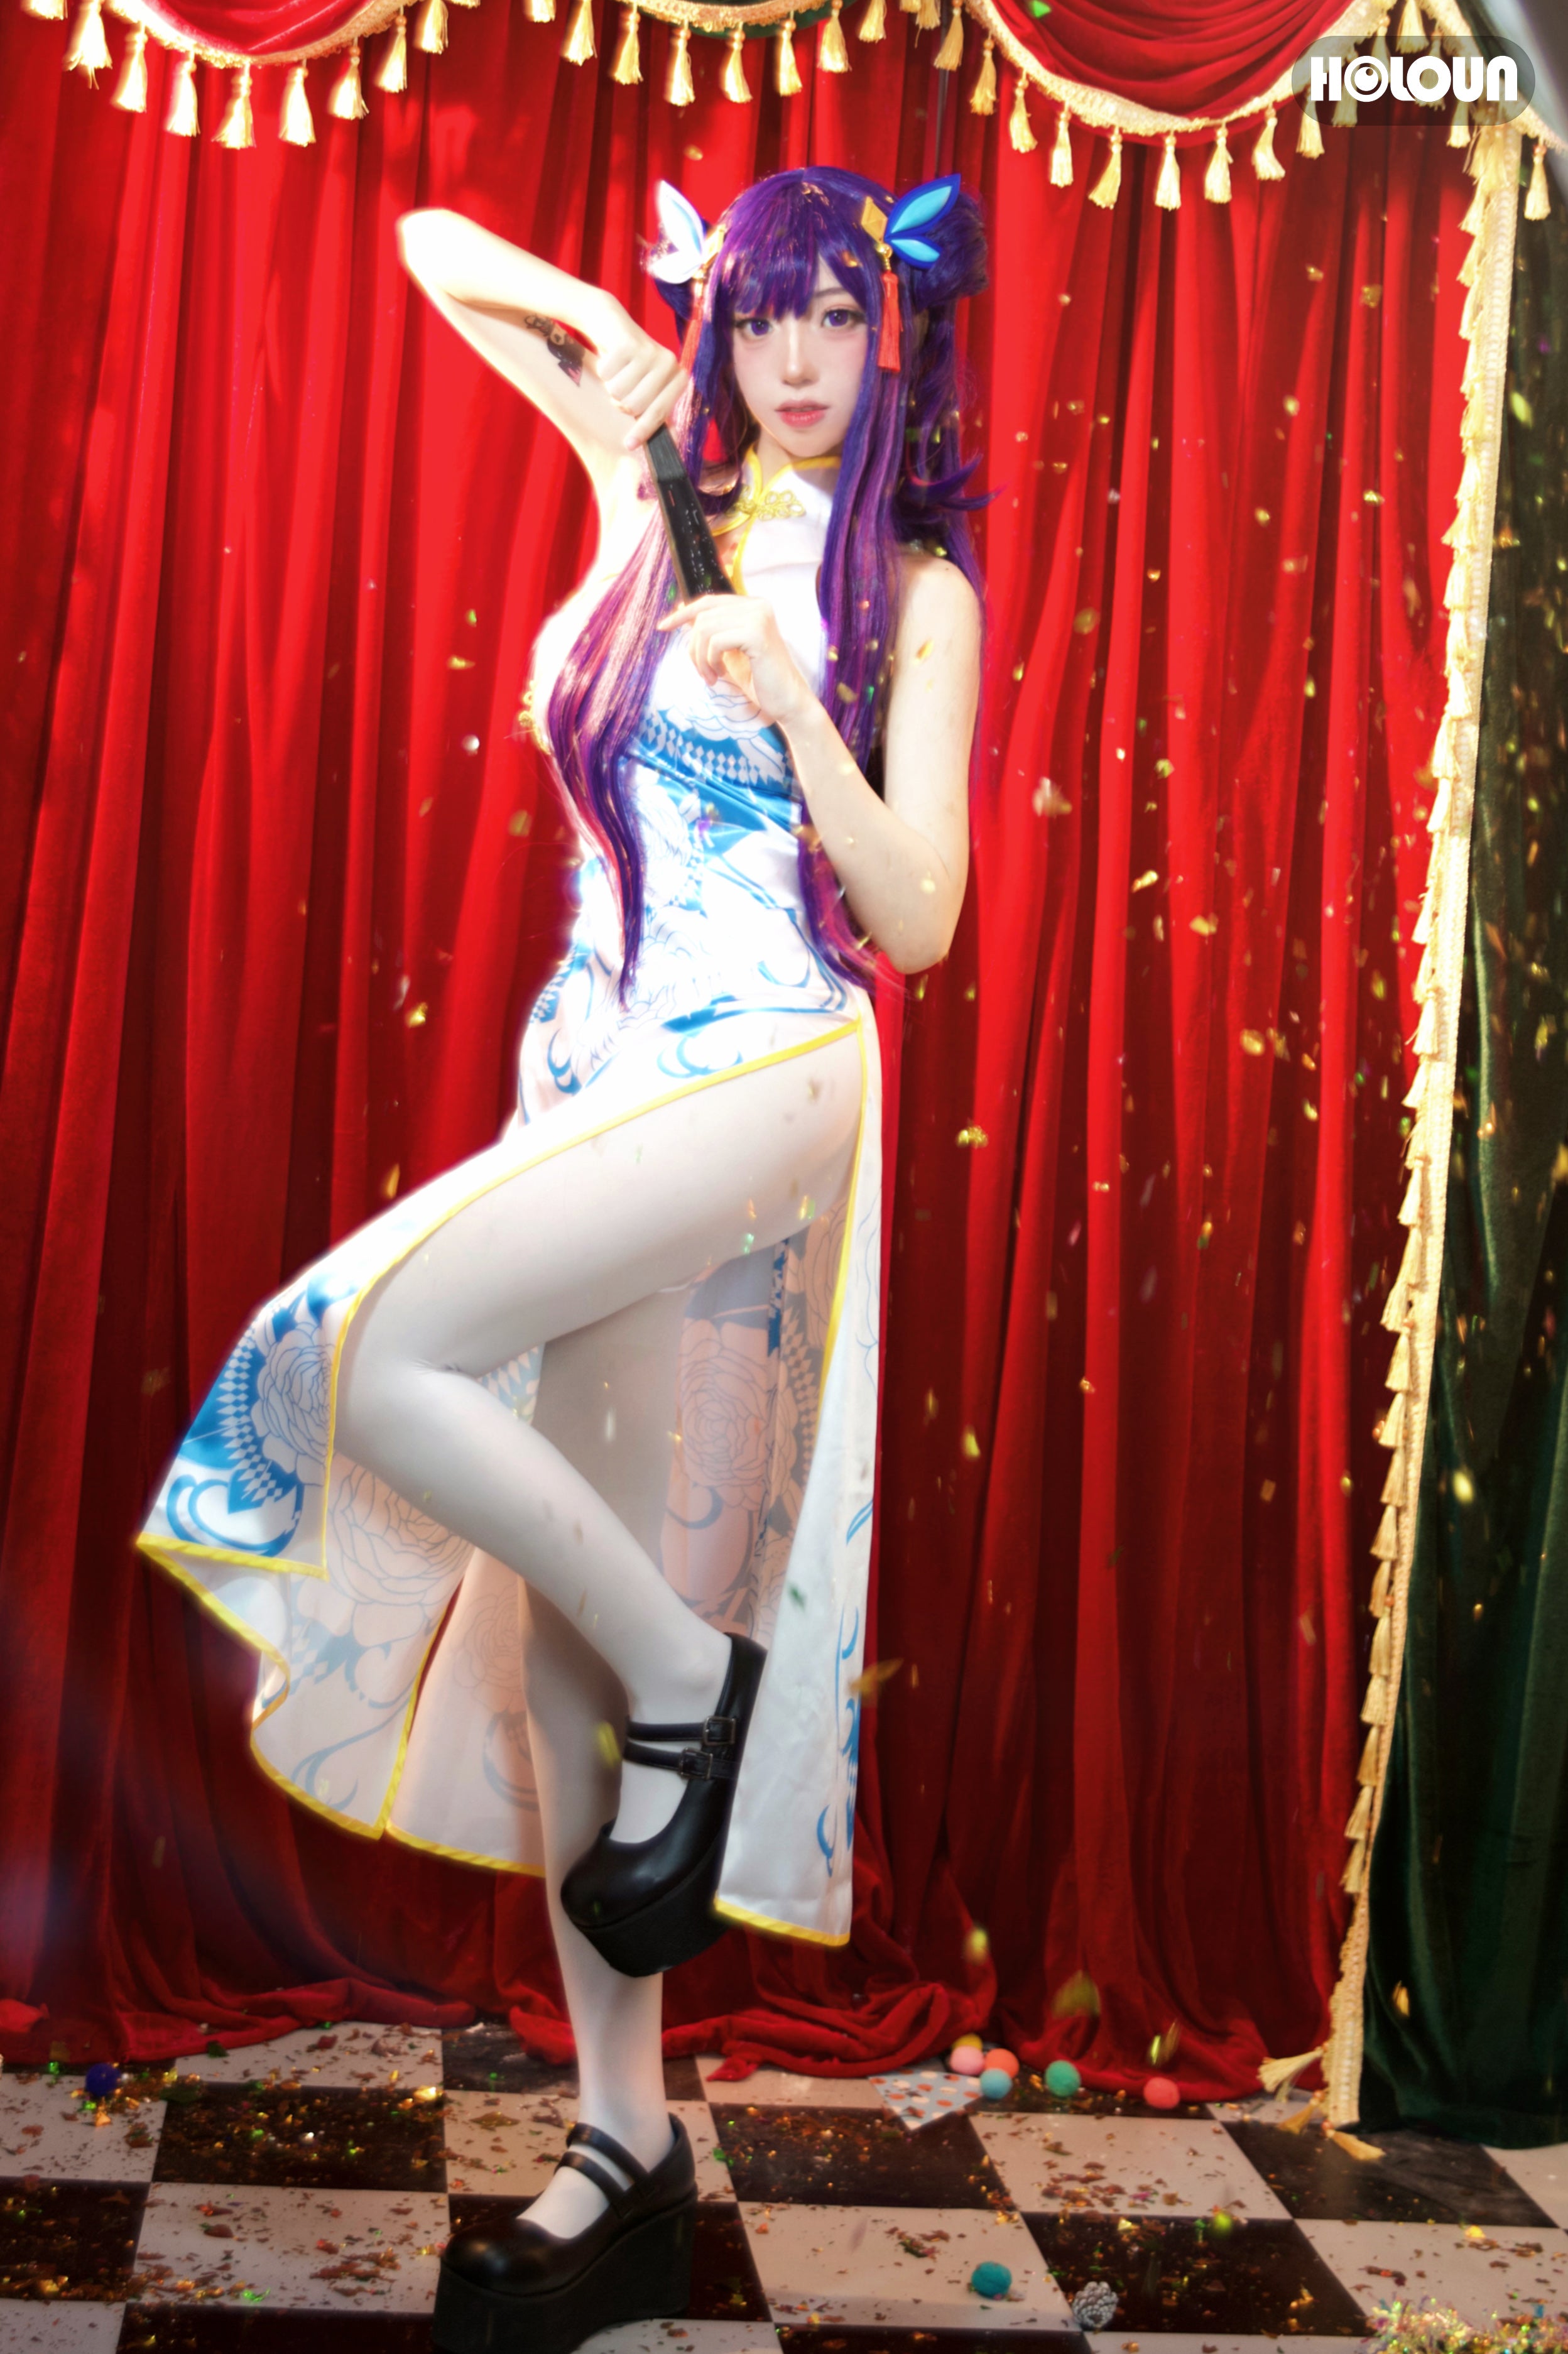 HOLOUN OSHI NO KO Anime Ai Hoshino Cosplay China Costume Cheongsam Chi-pao Sleeveless Dress Legging Hair Accessory Party Gift